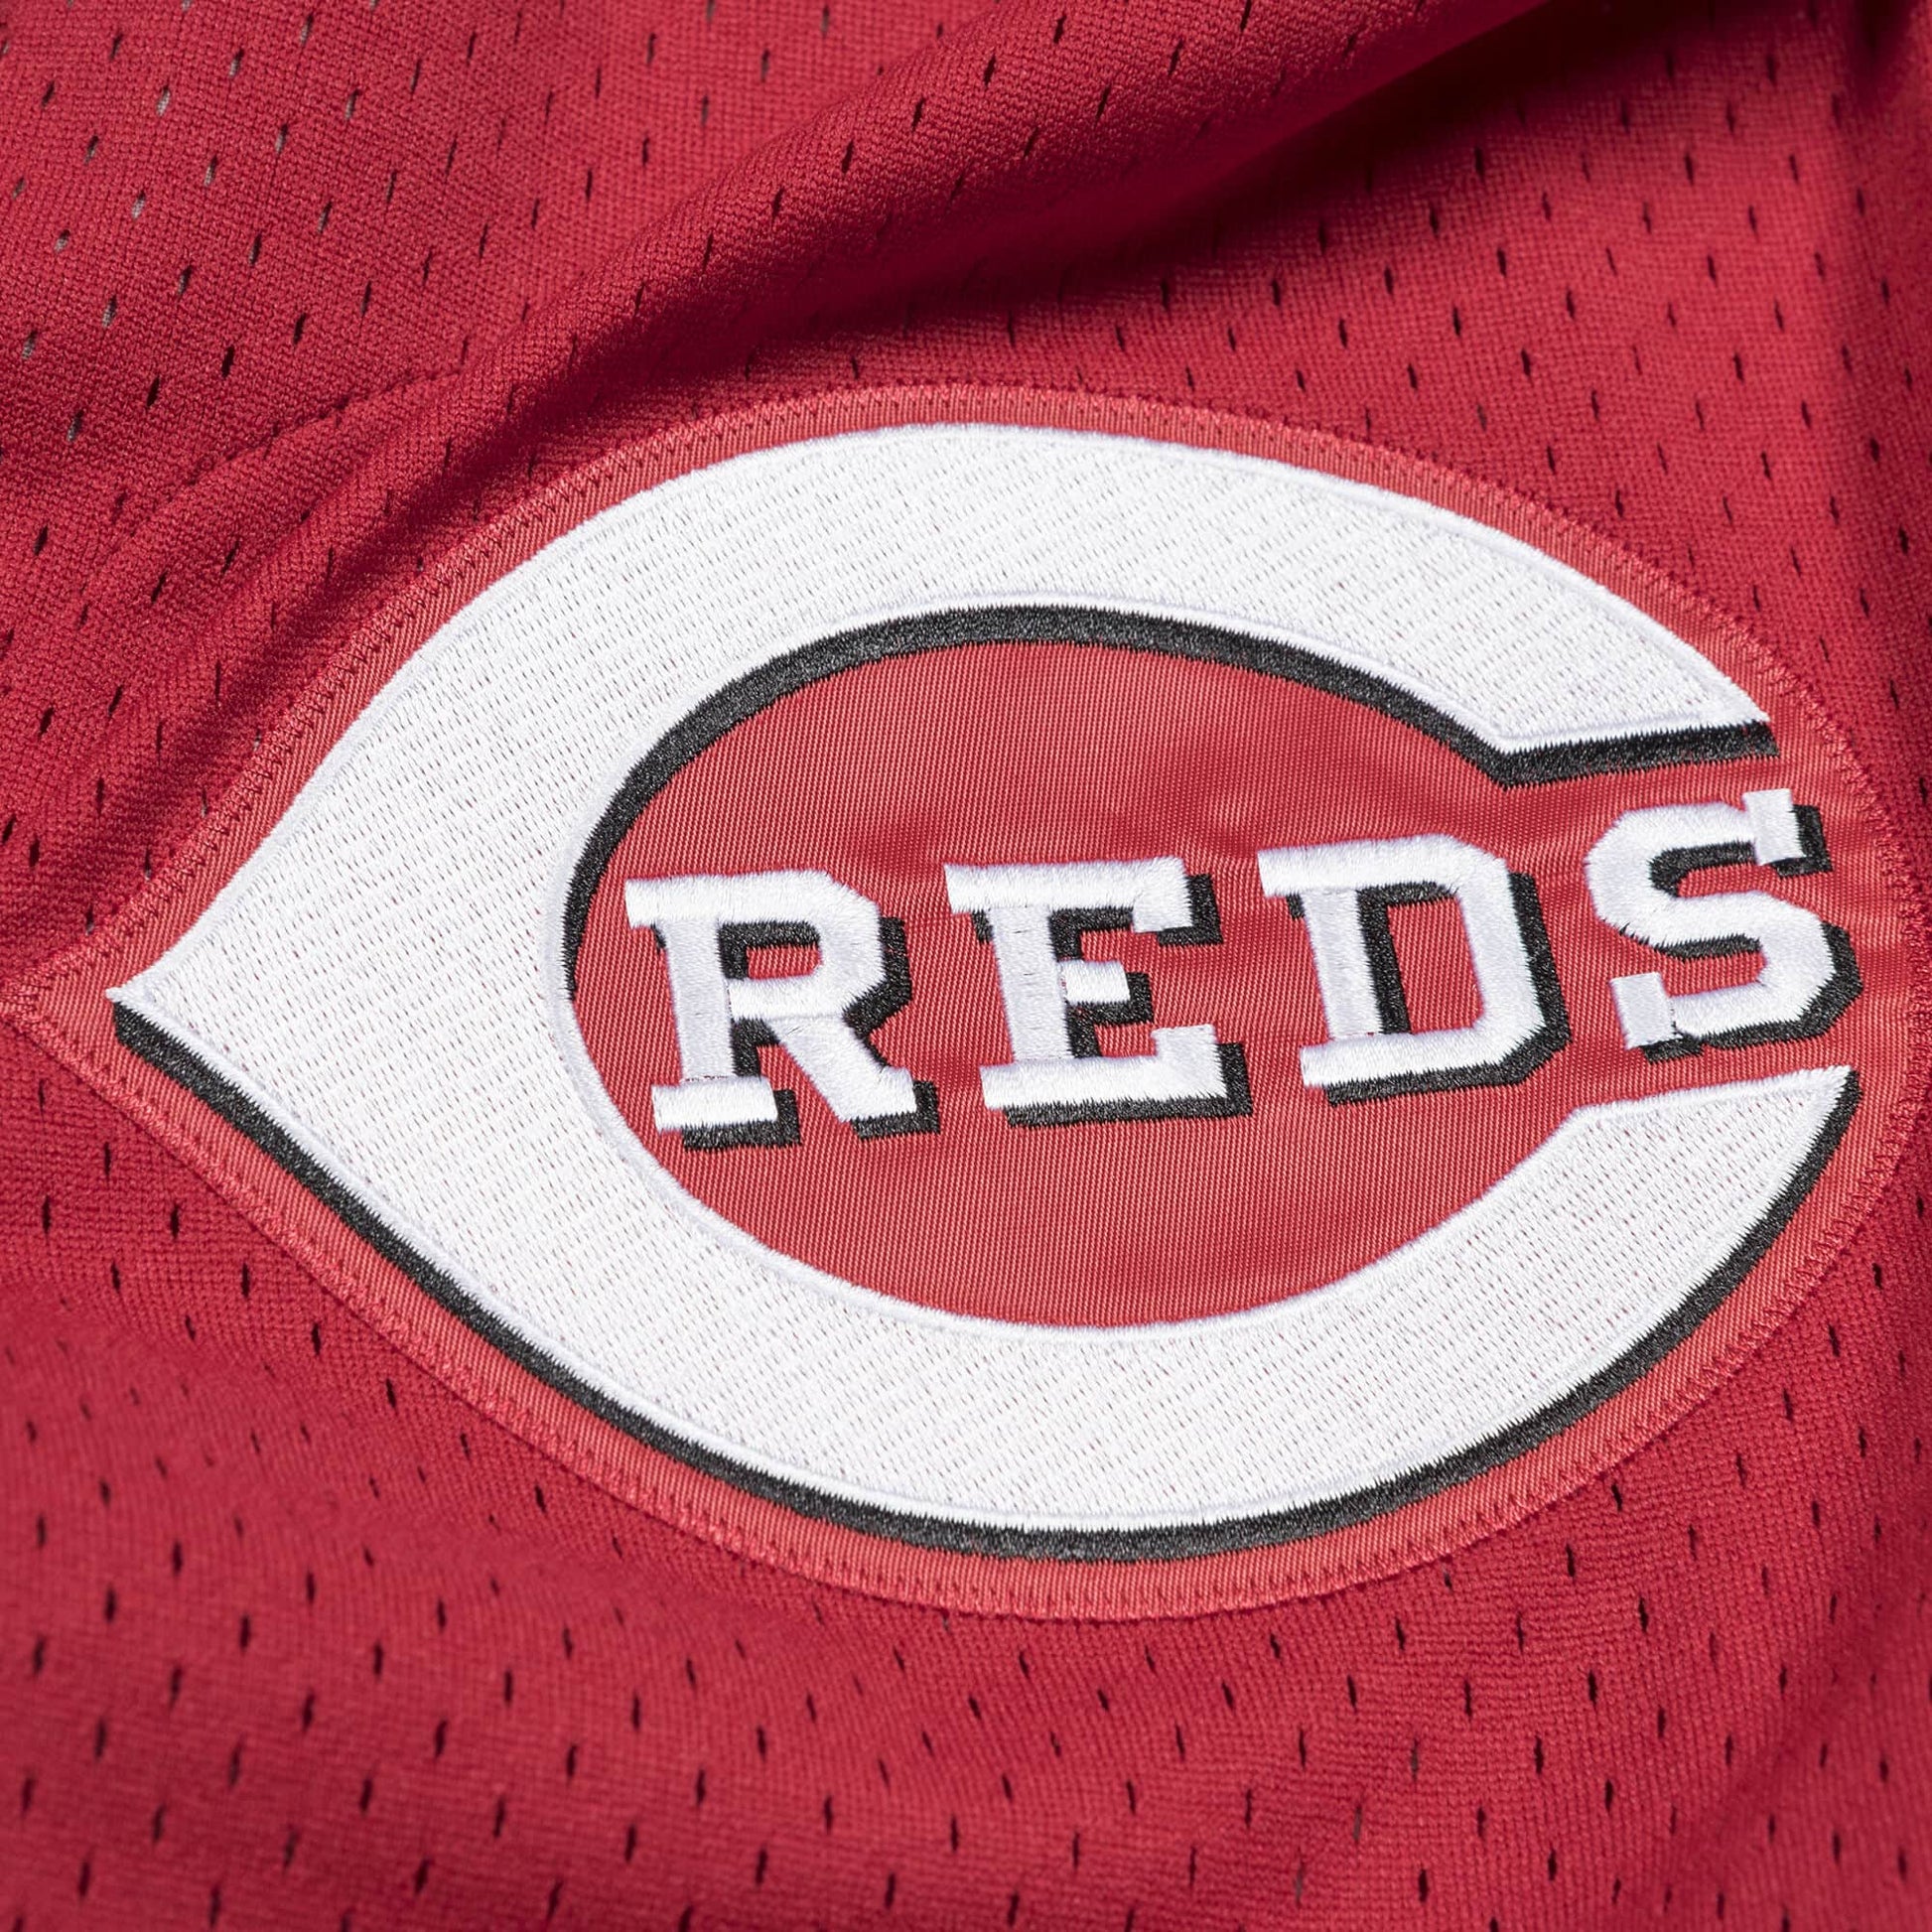 Ken Griffey Jr. Cincinnati Reds Mitchell & Ness Jersey – Capz